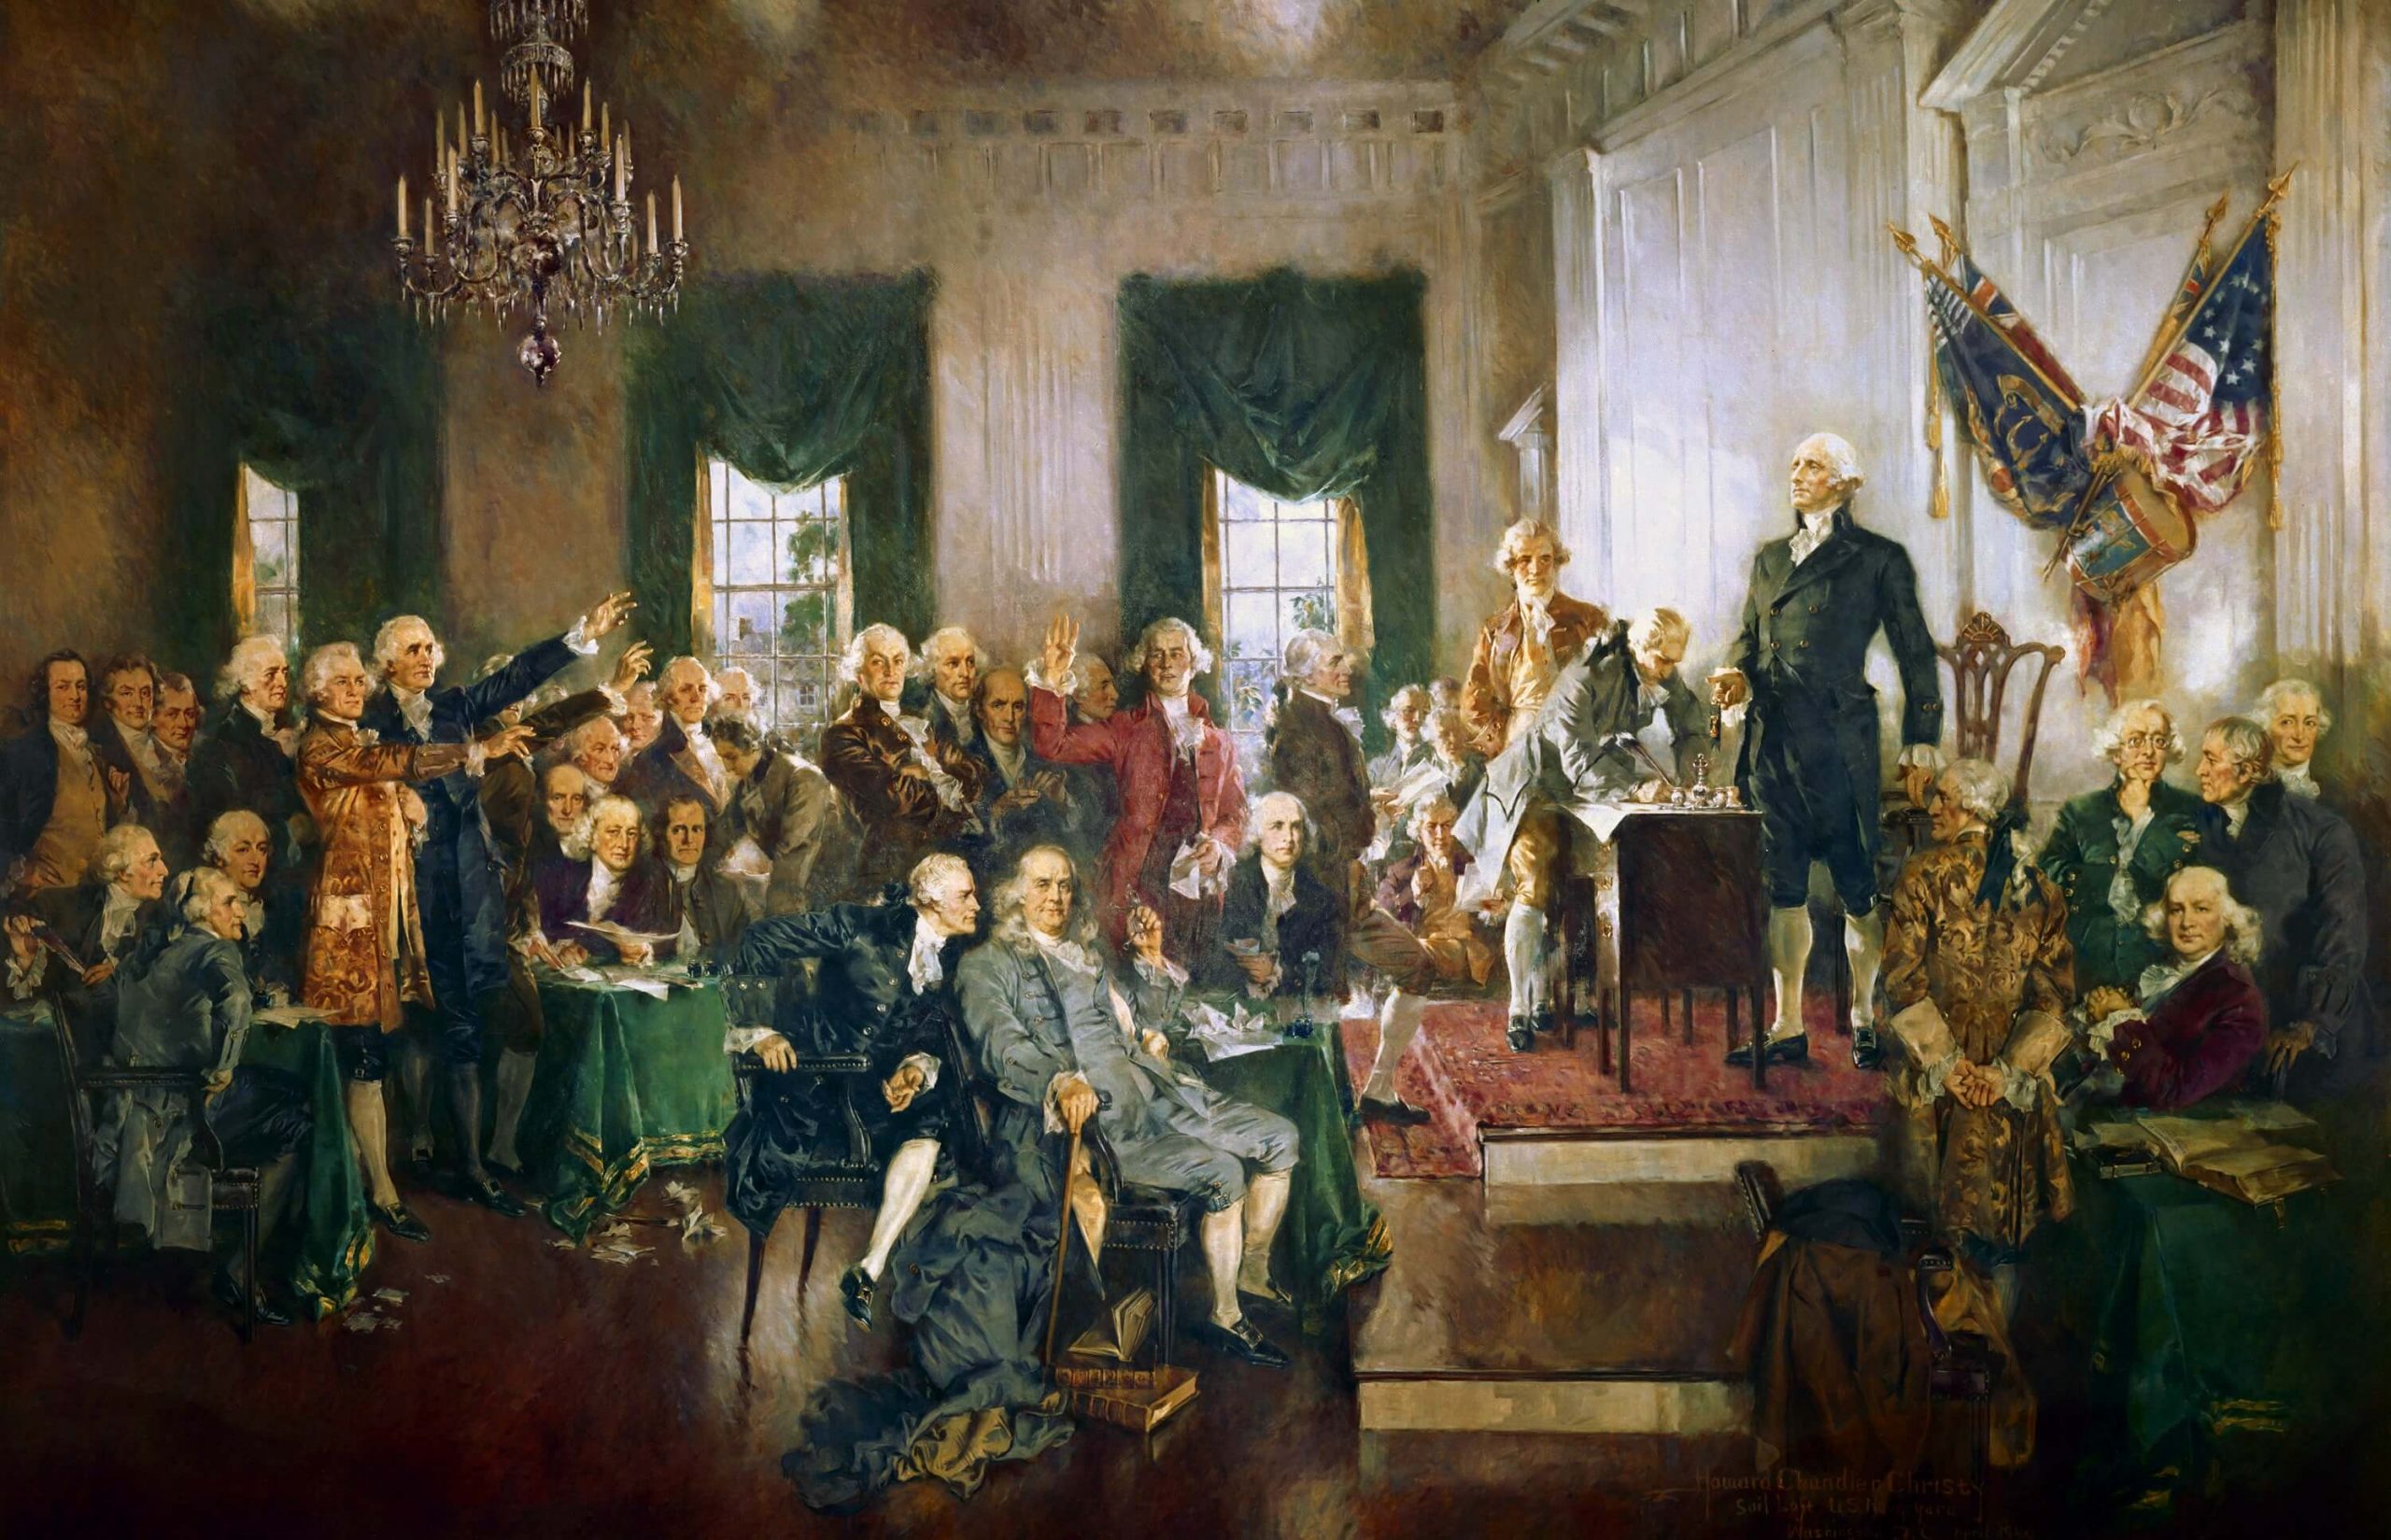 סצנה ממעמד החתימה על חוקת ארצות הברית, ציור שמן מפורסם המתאר סצנה ממעמד מתן החתימות על חוקת ארצות הברית - צויר על ידי האוורד צ'נדלר כריסטי